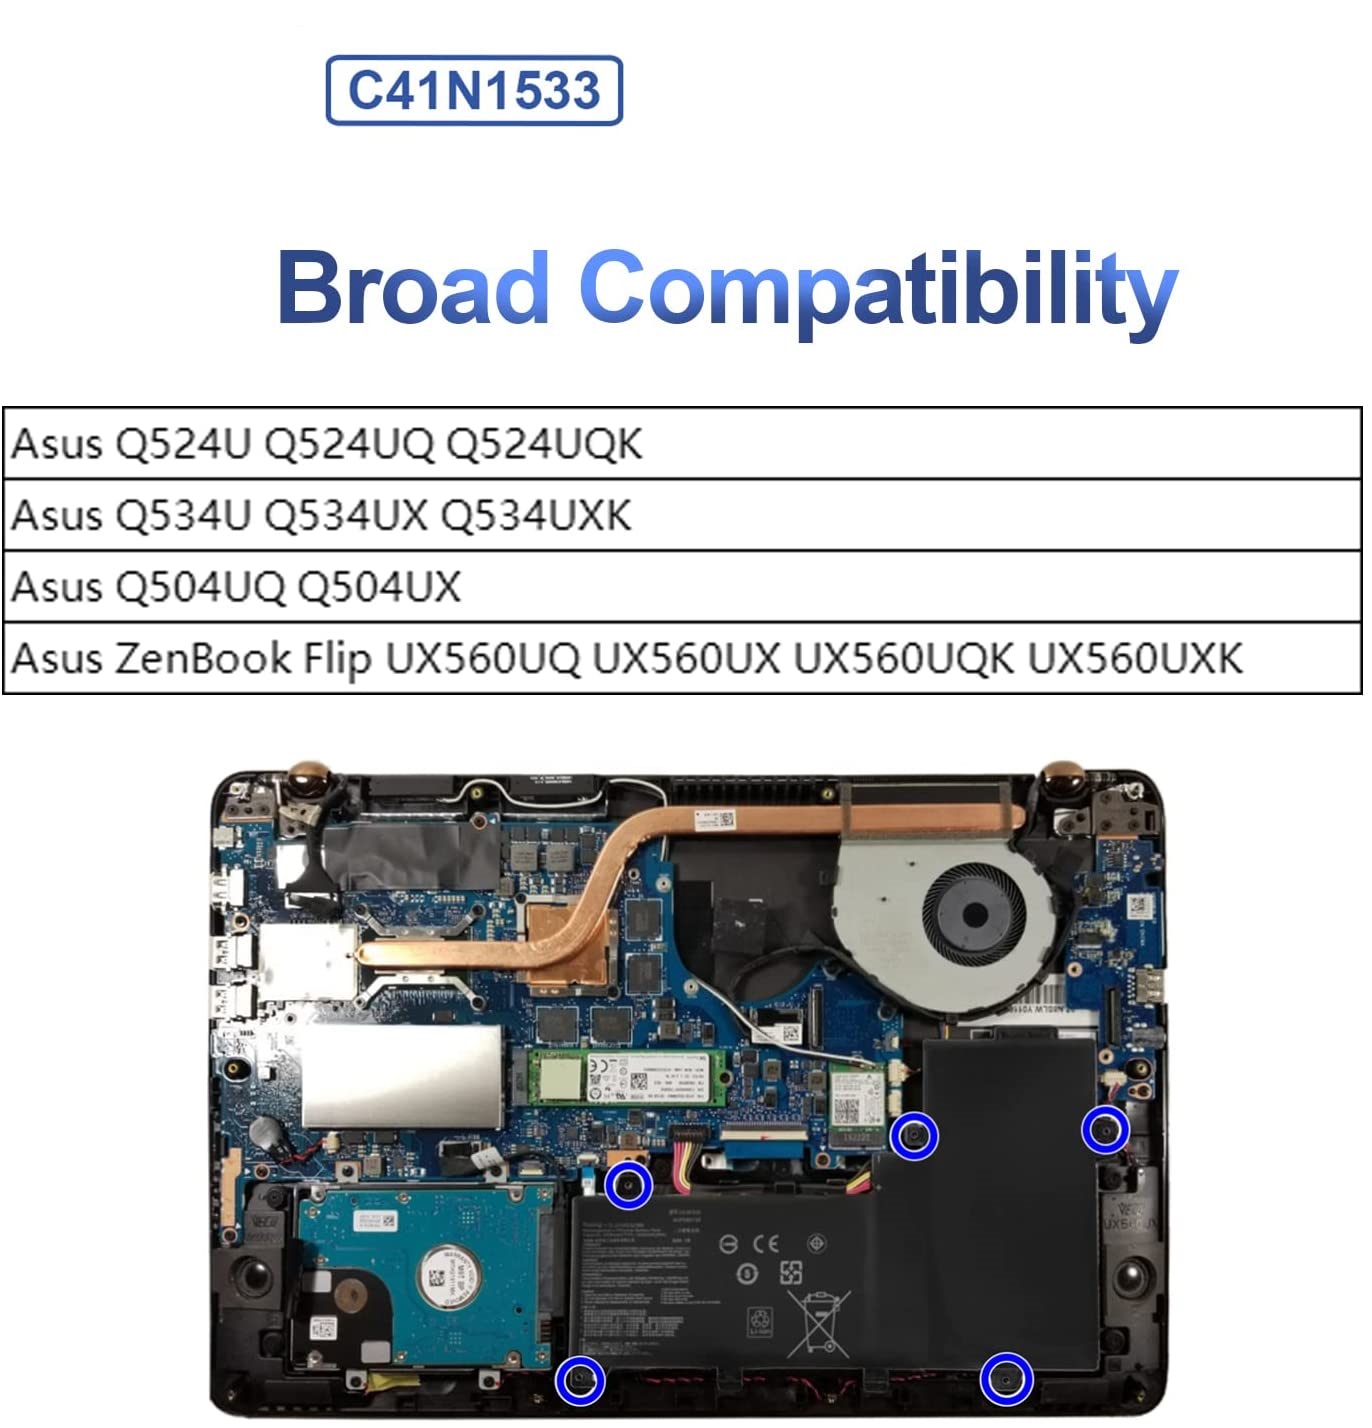 Asus C41N1533 Battery for Asus ZenBook Flip UX560UQ UX560UX UX560UXK UX560UQK Q524U Q534U Q524UQ Q524UQK Q534UX Q534UXK Q504UQ Q504UX 4ICP3/63/120